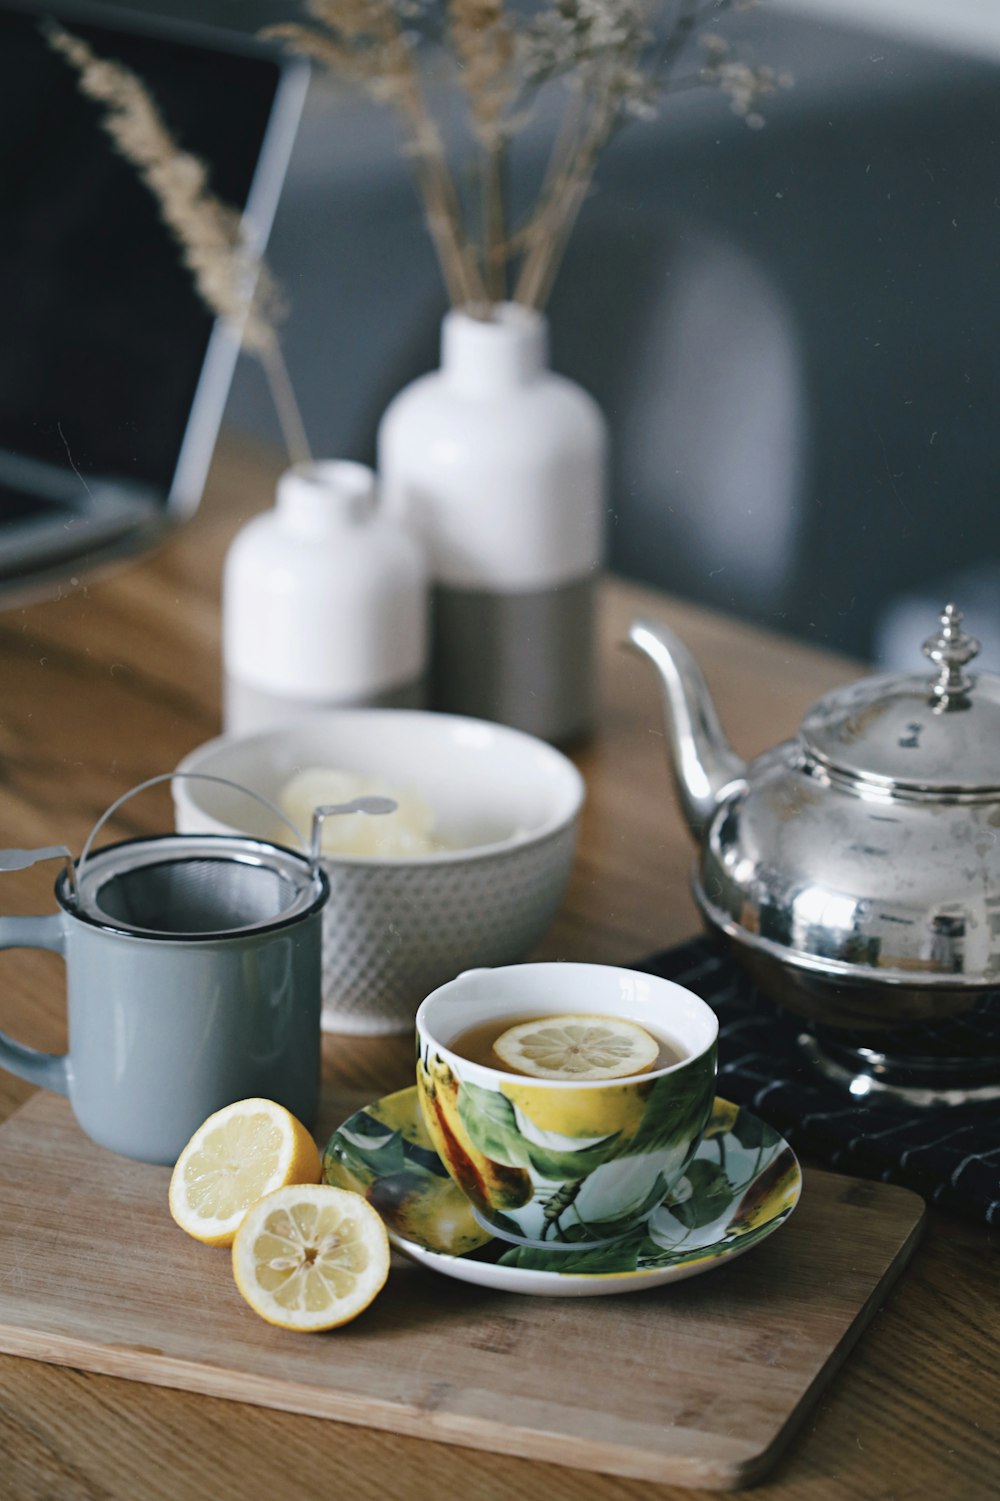 bule cinza ao lado da caneca cheia de chá e limão em cima da mesa